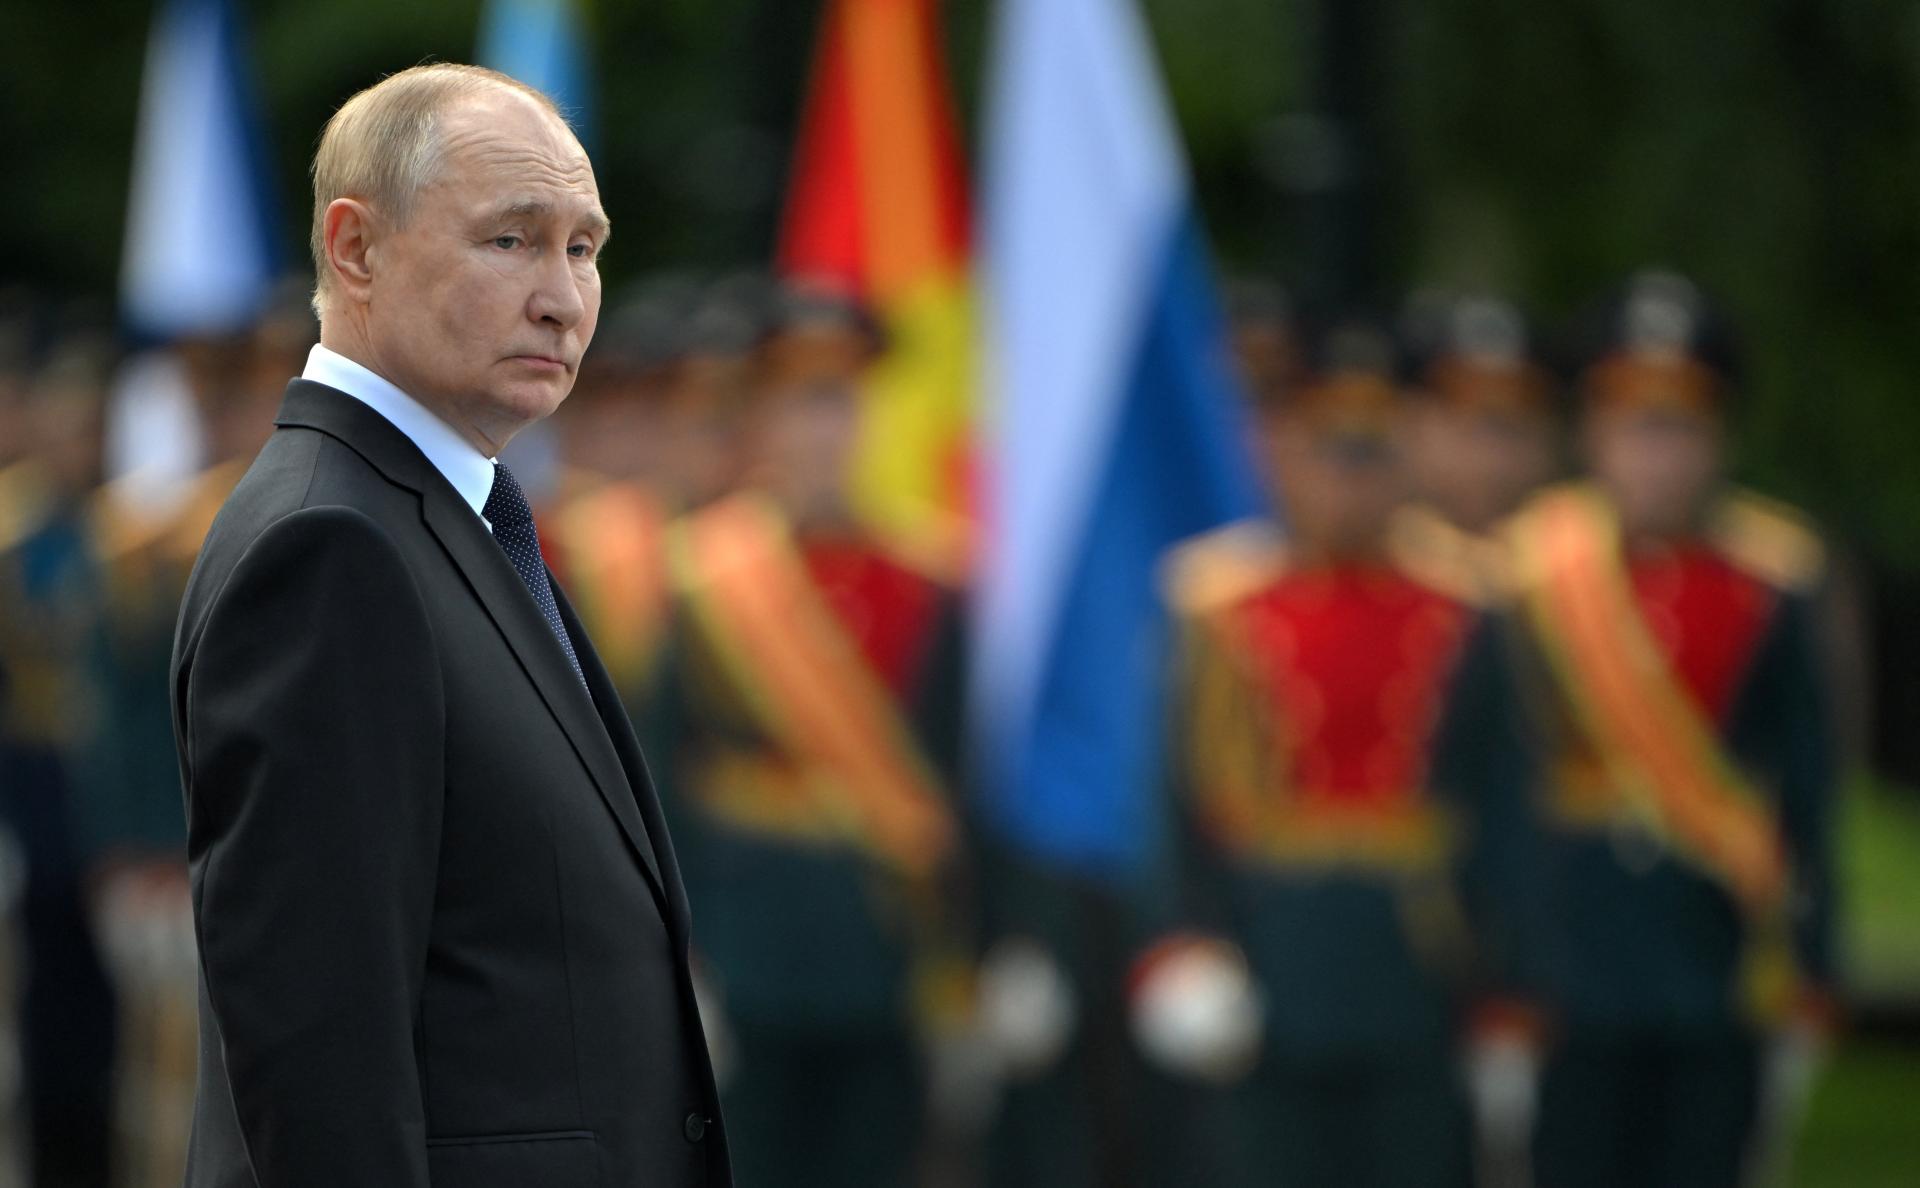 Najviac proruská krajina Európy vo veľkom zbrojí Ukrajinu. Prečo Putin mlčí a zametá to pod koberec?